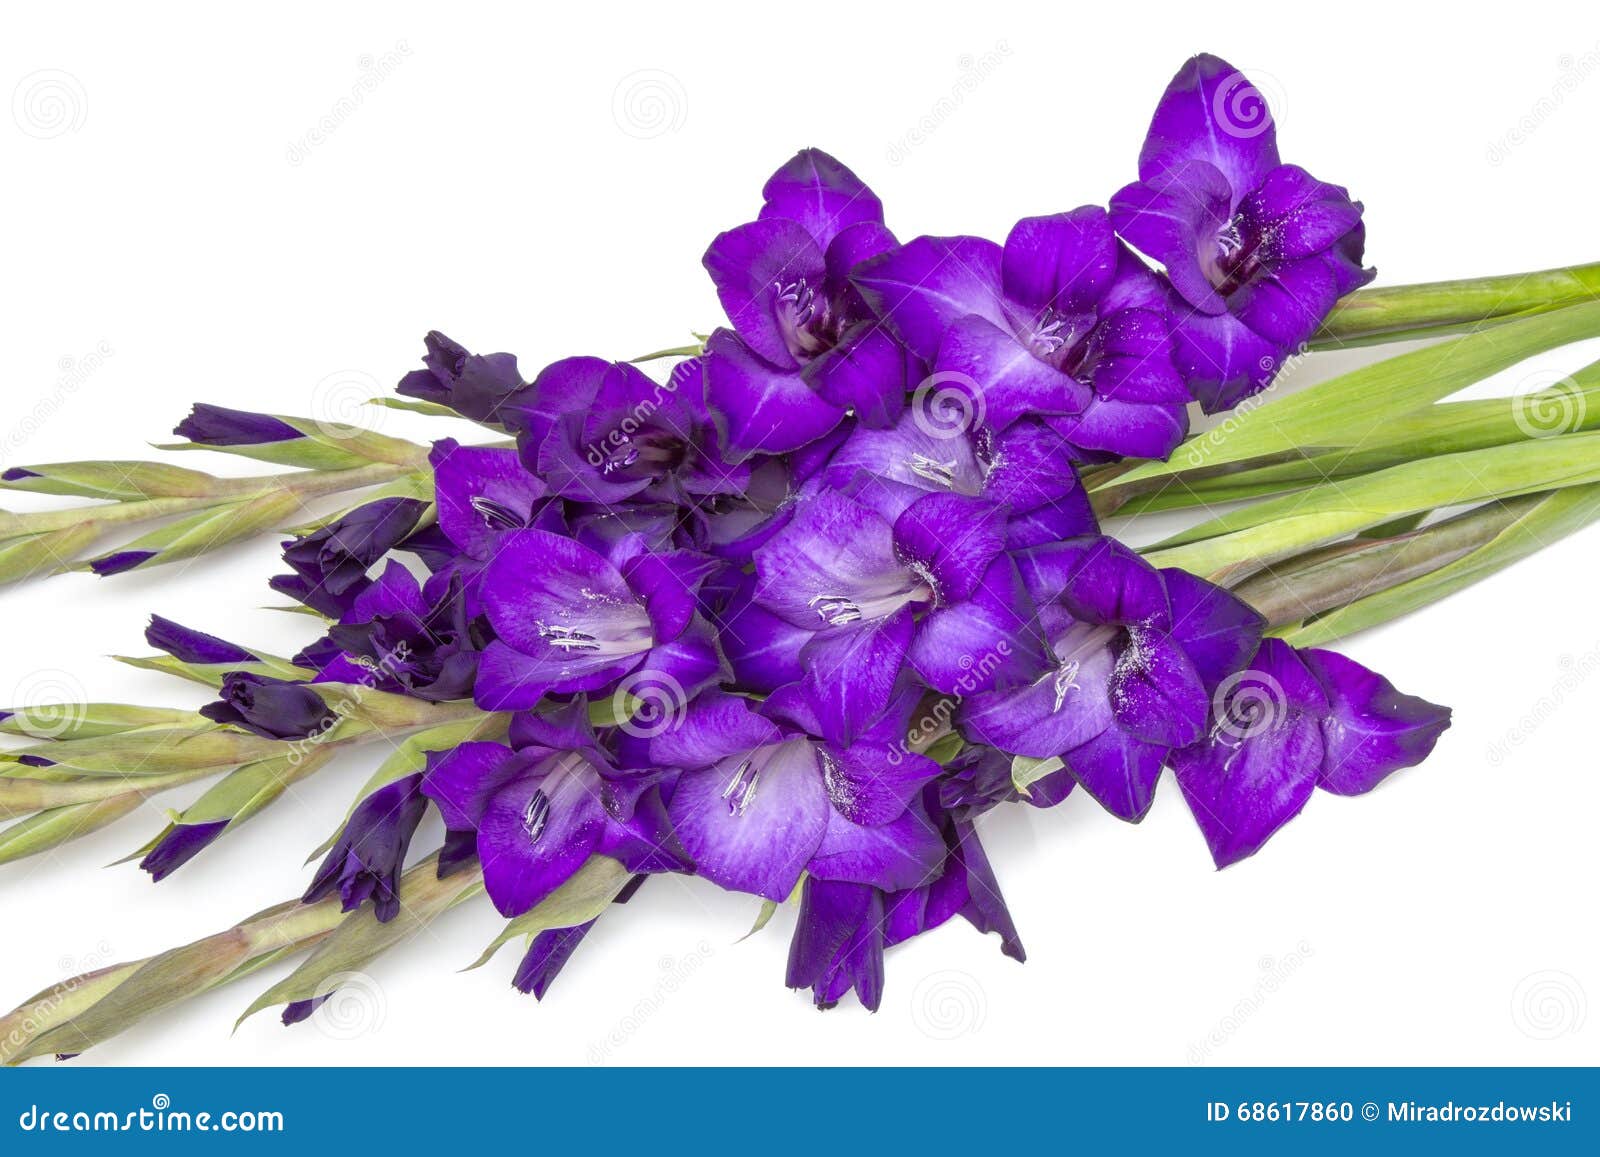 紫色剑兰花 库存图片. 图片 包括有 叶子, 花卉, 自治权, 复制, 空间, 开花, 礼品, 本质, 颜色 - 62744175